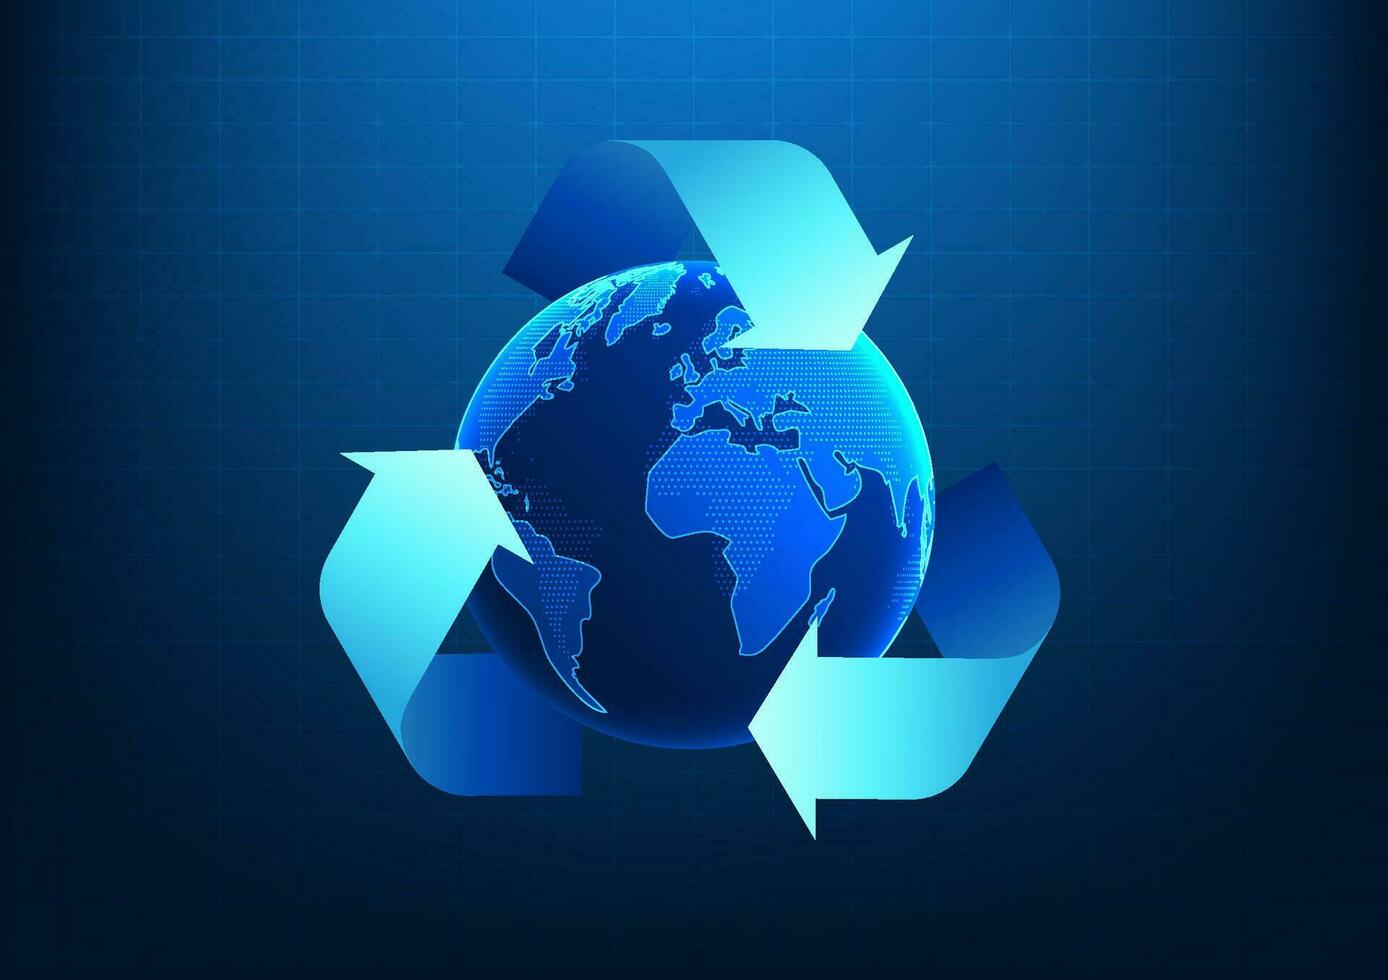 recycling symbool binnen is een wereldbol. het shows hoe naar helpen voorkomen globaal opwarming en gebruik hernieuwbaar energie net zo schoon energie naar verminderen koolstof uitstoot. vector illustratie